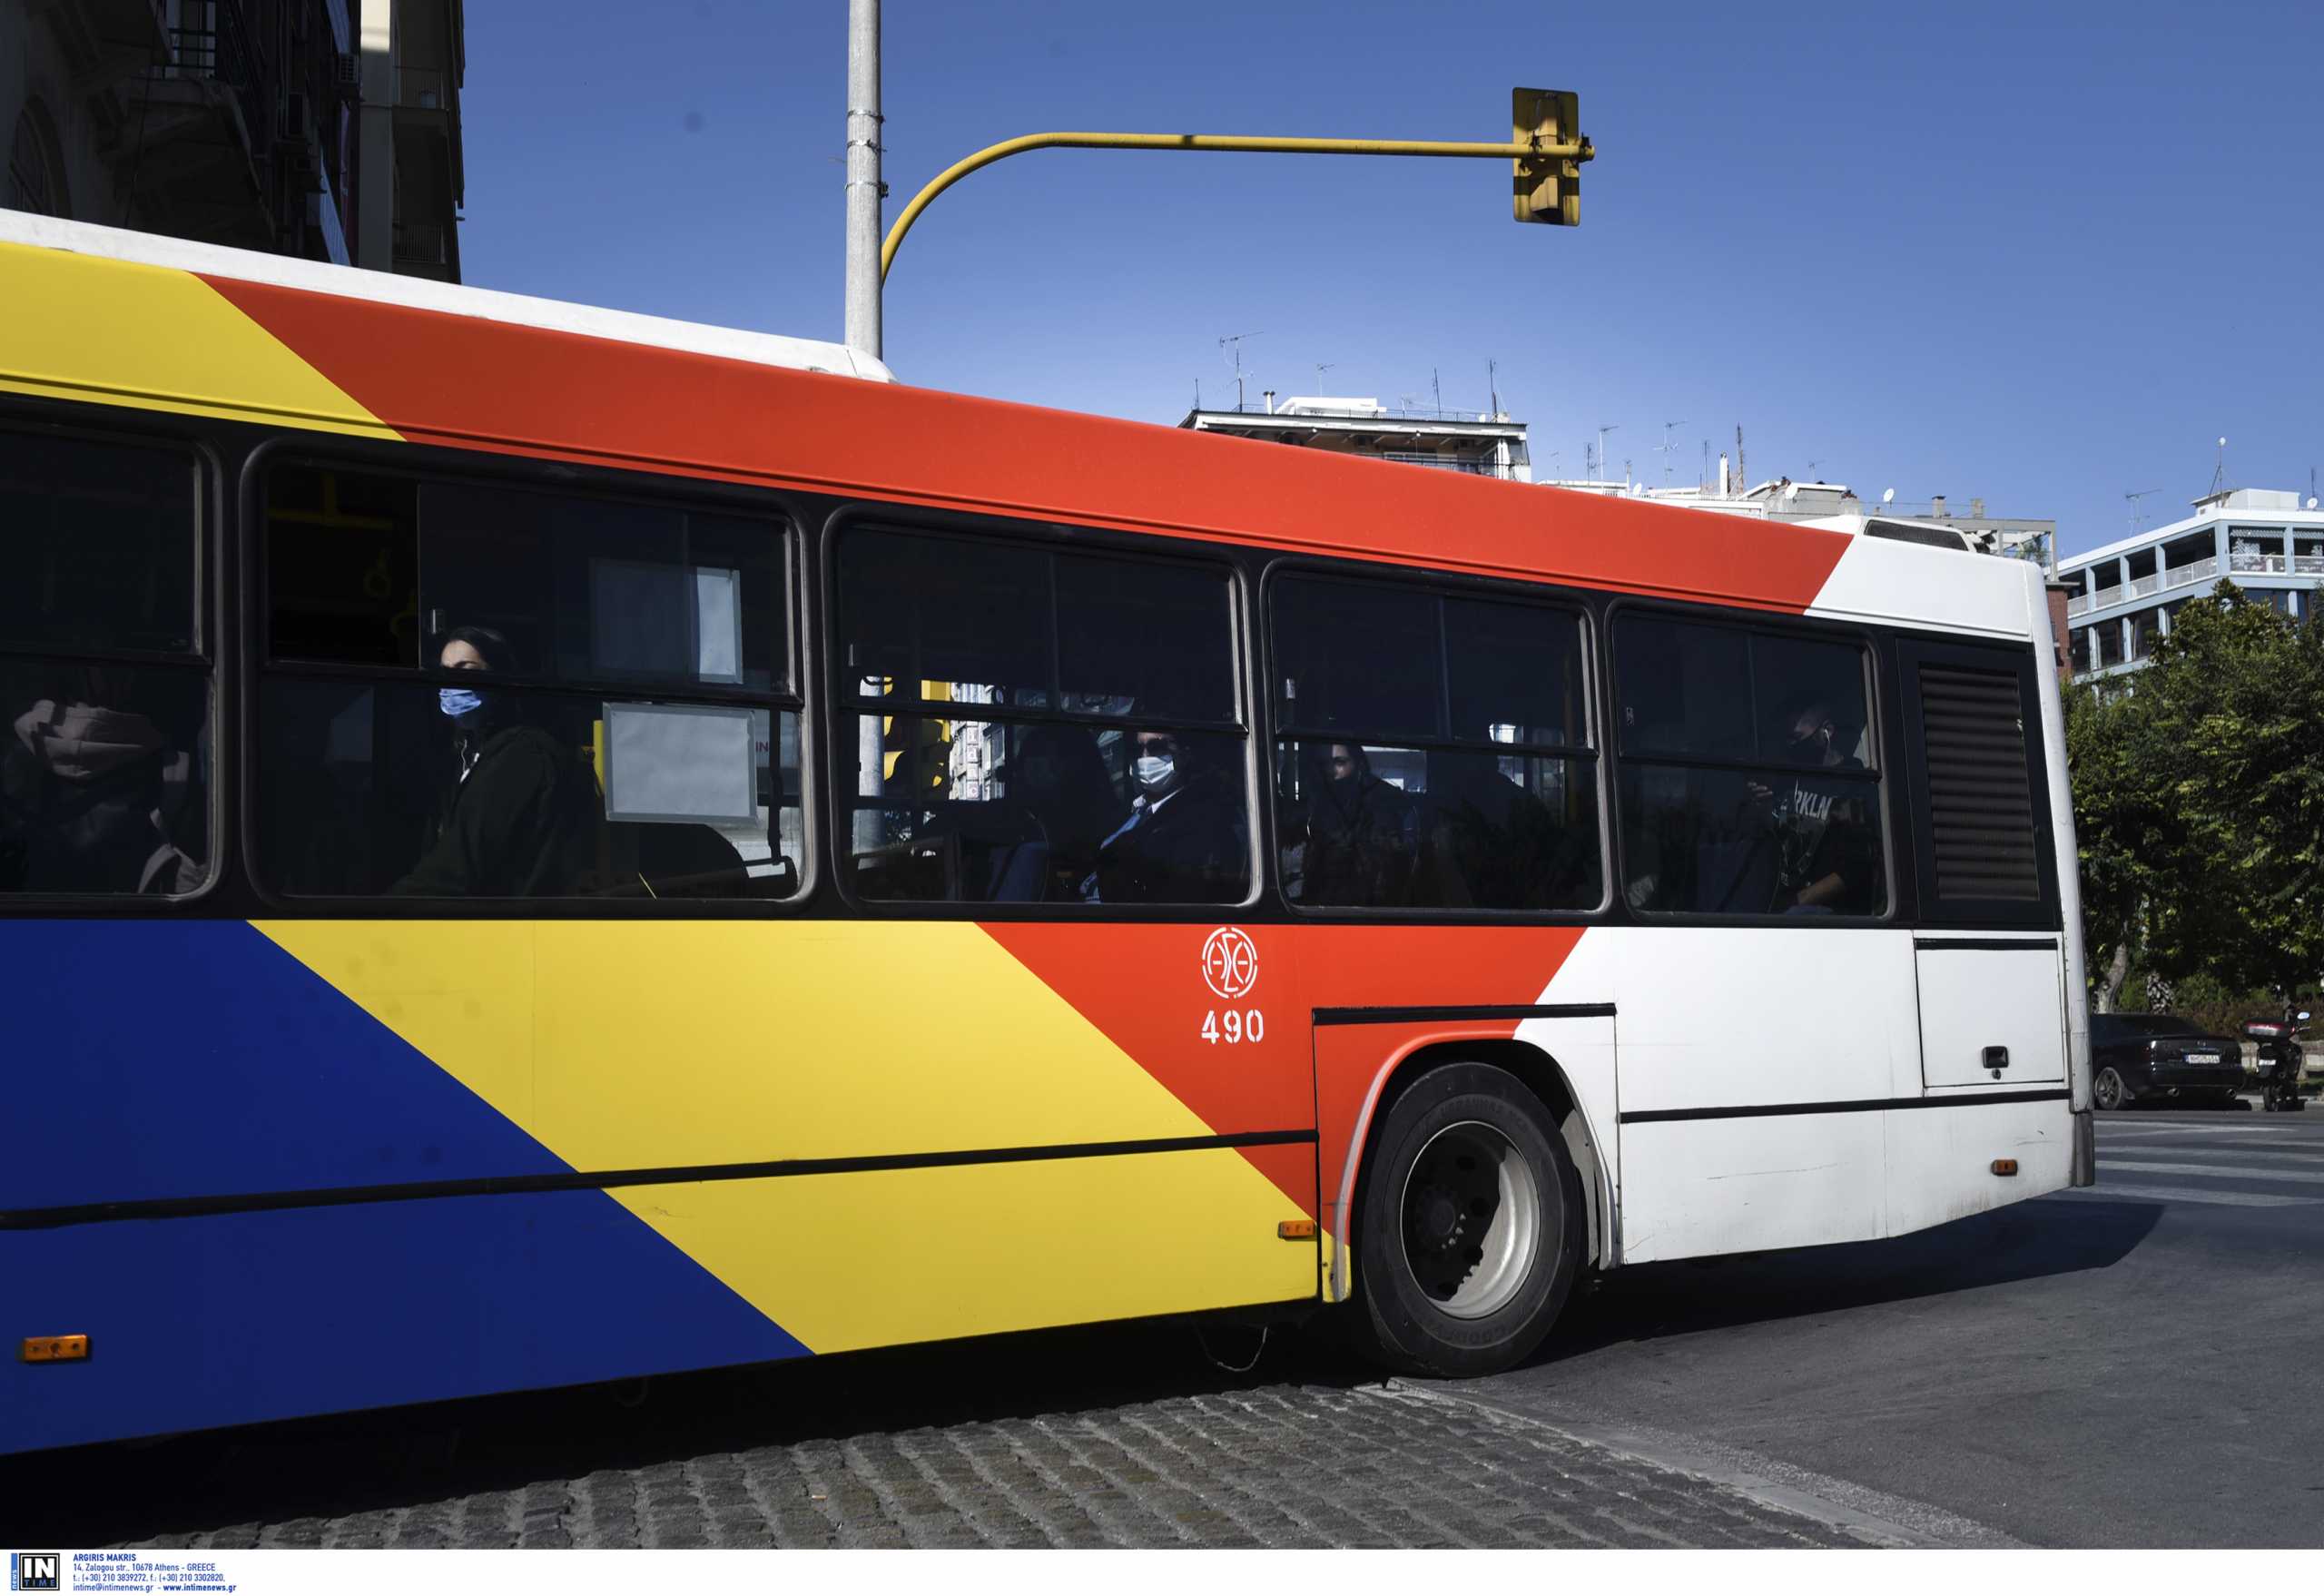 Θεσσαλονίκη: Καταδρομική επίθεση σε λεωφορείο με μπουκάλια και πέτρες – 12 προσαγωγές στο σημείο